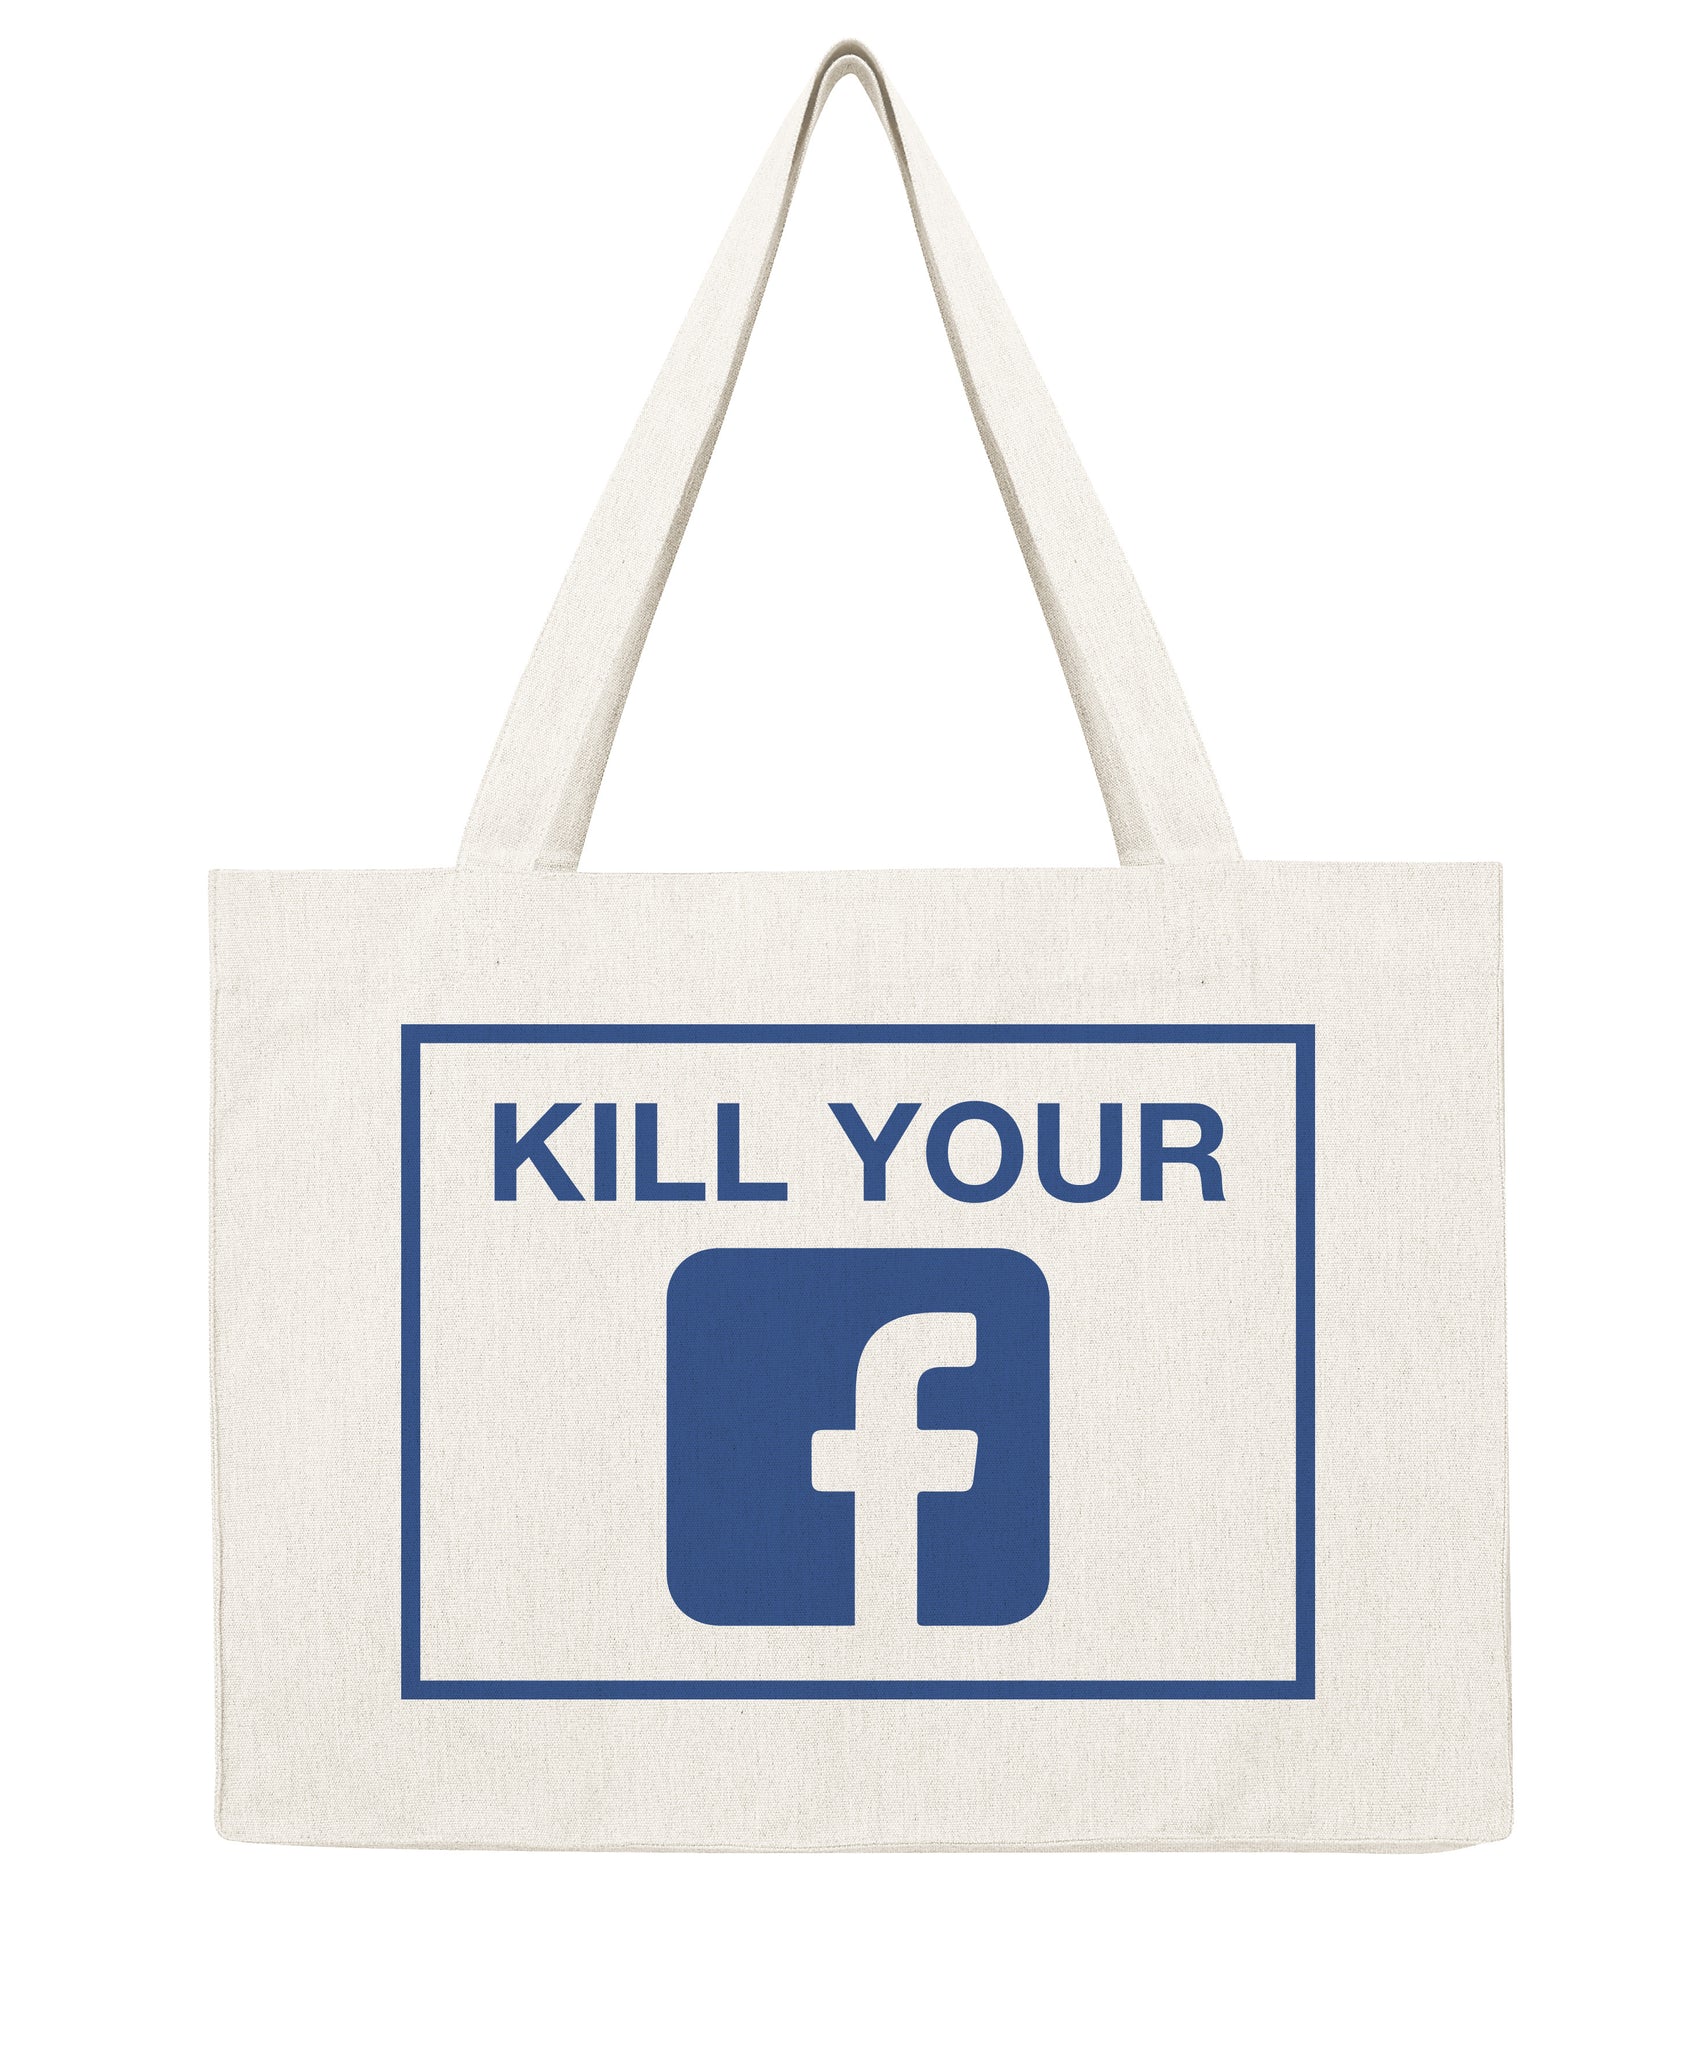 Kill your Facebook - Shopping bag-Sacs-Atelier Amelot